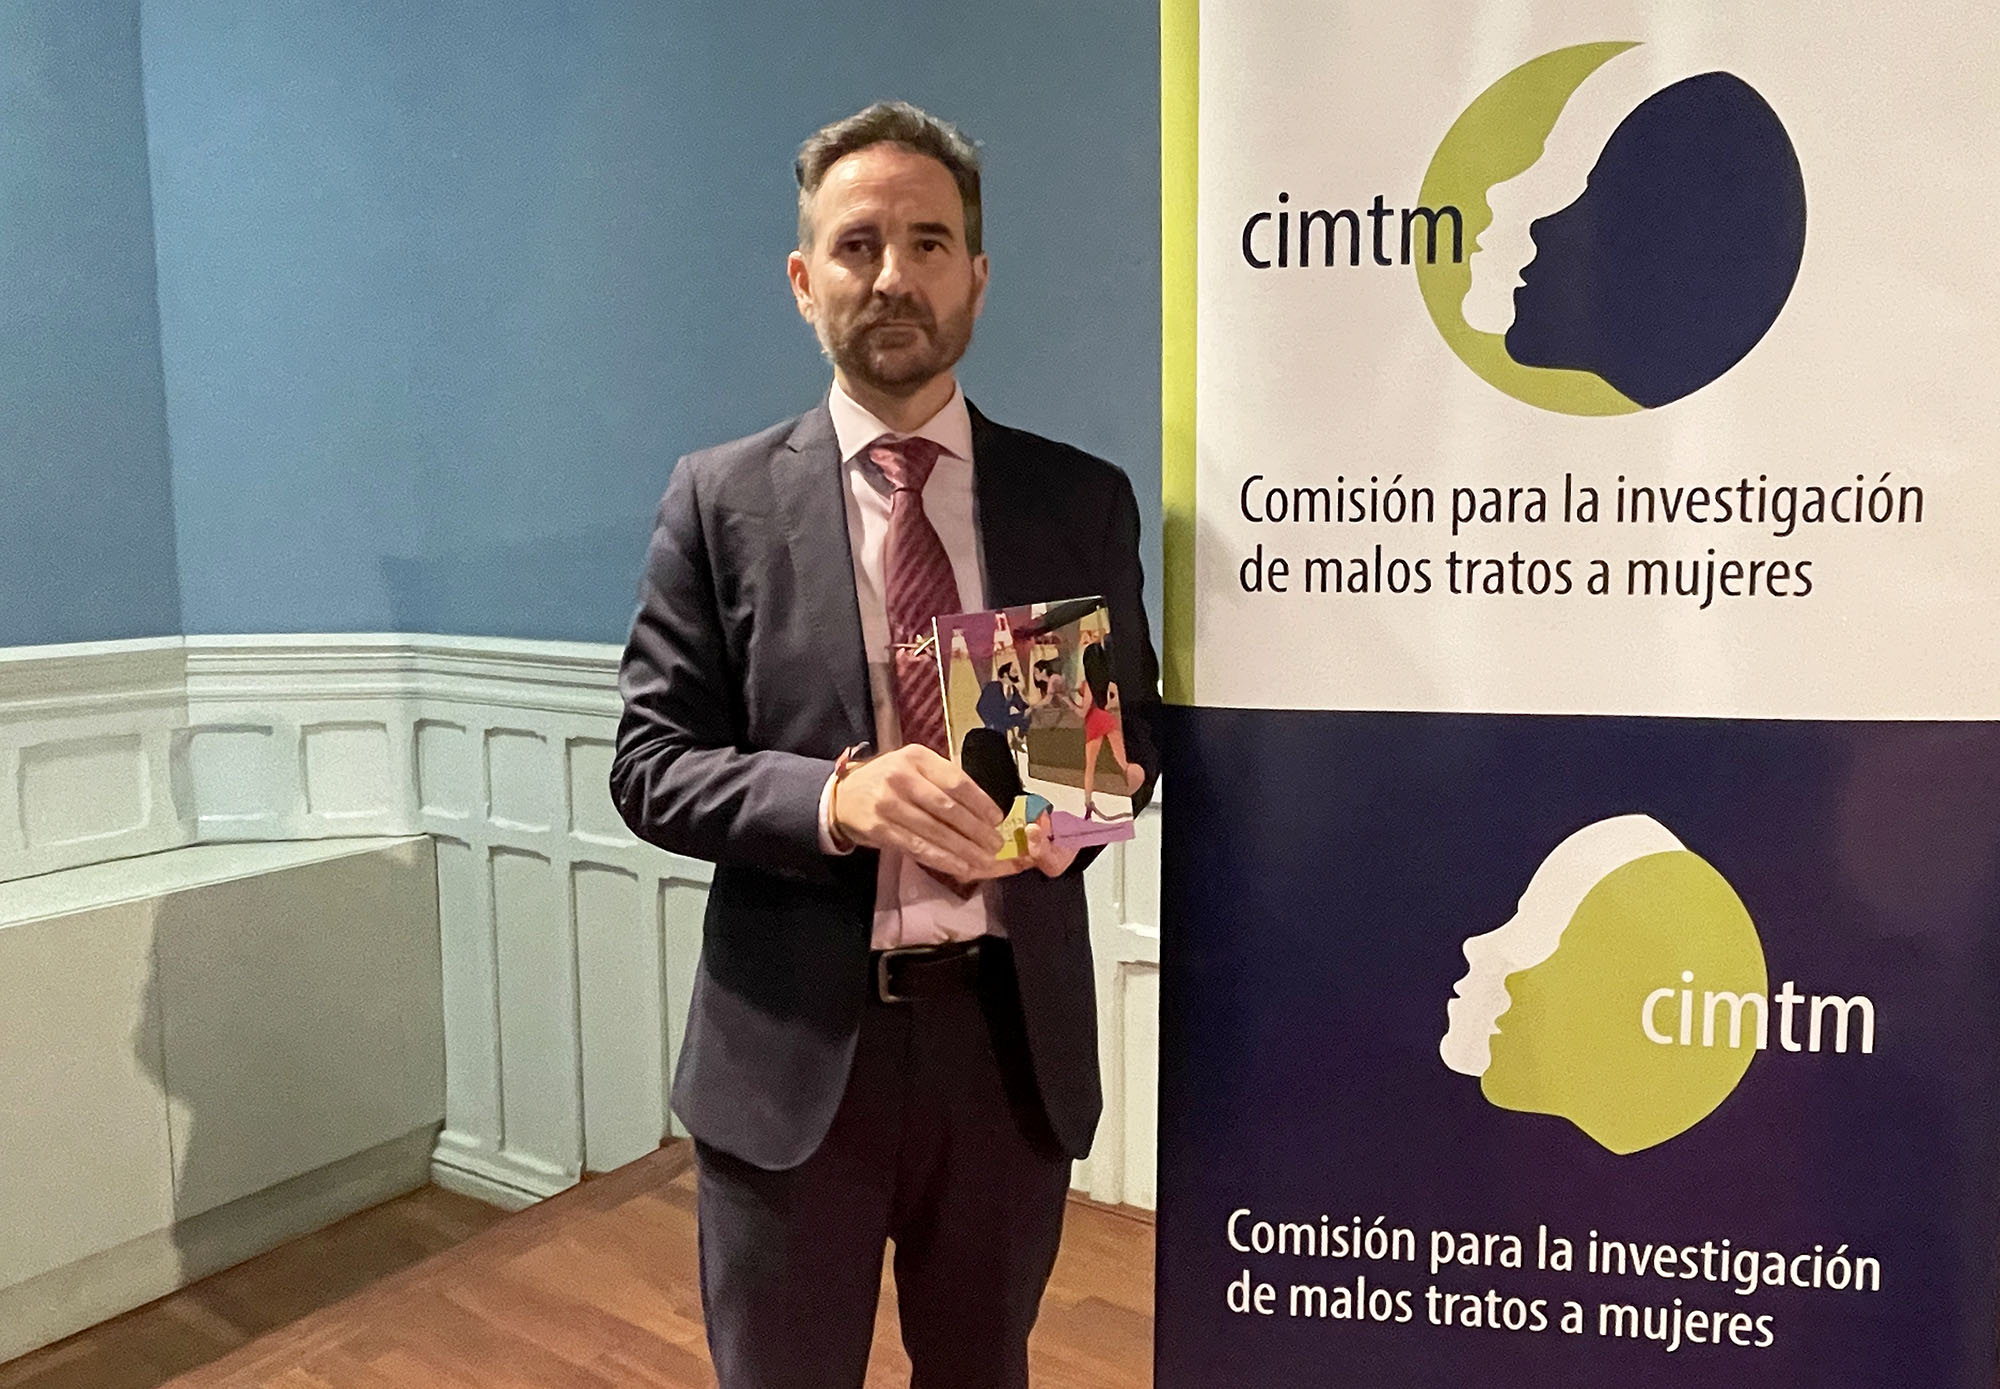 Antonio Asensio Frases impartió en Madrid su conferencia sobre la realidad en prostitución y trata, invitado por la CIMTM.